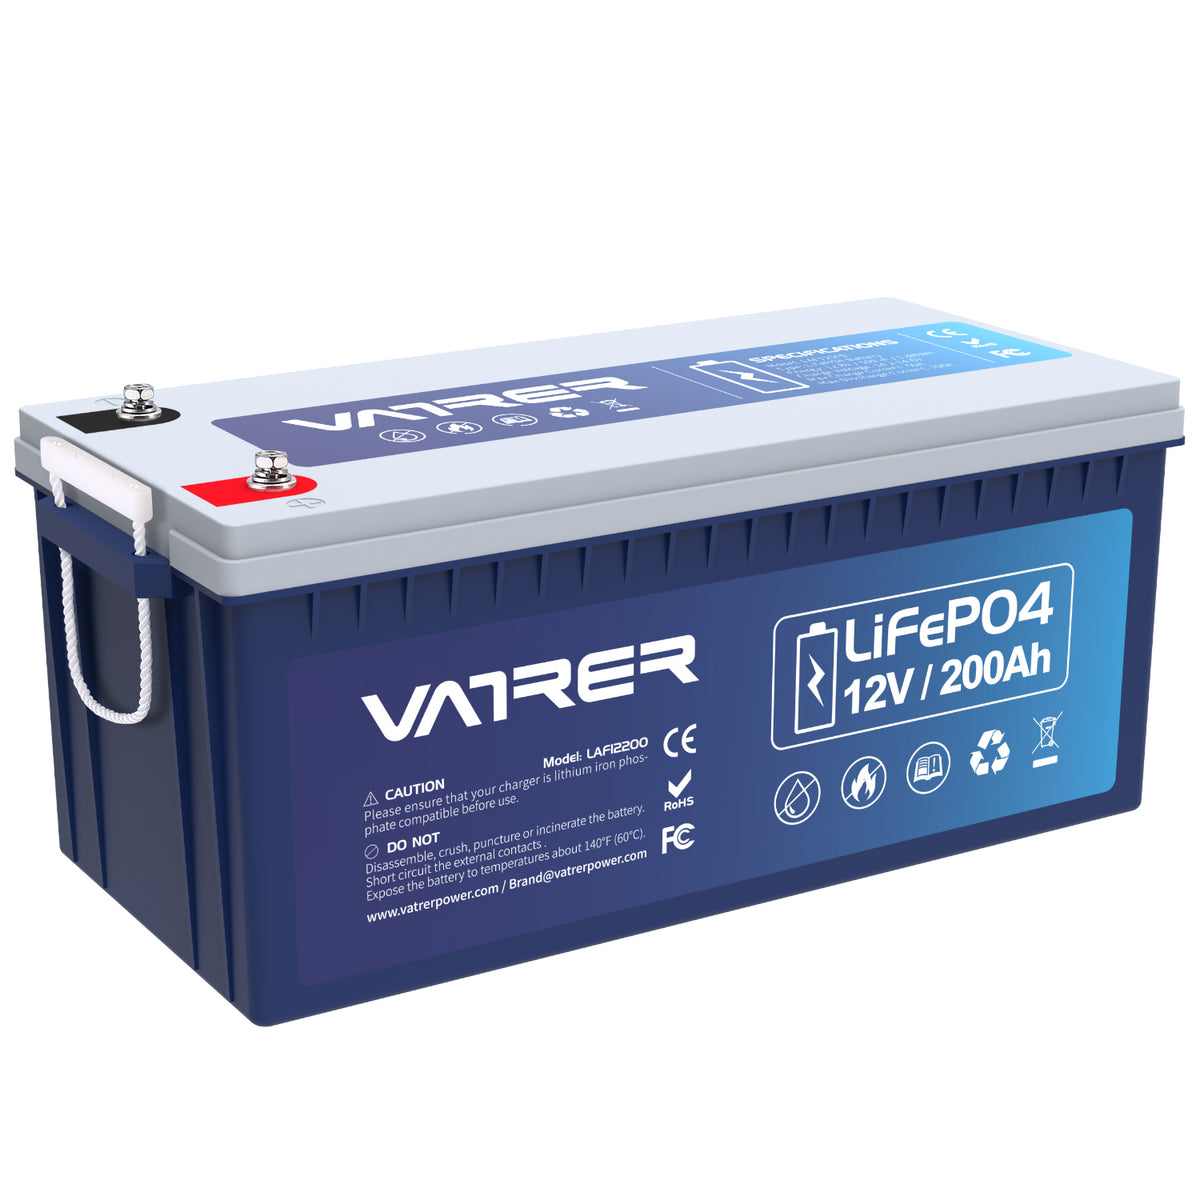 Batterie au lithium 12 V 200 Ah Plus LiFePO4, BMS 200 A intégré et coupure basse température. 11